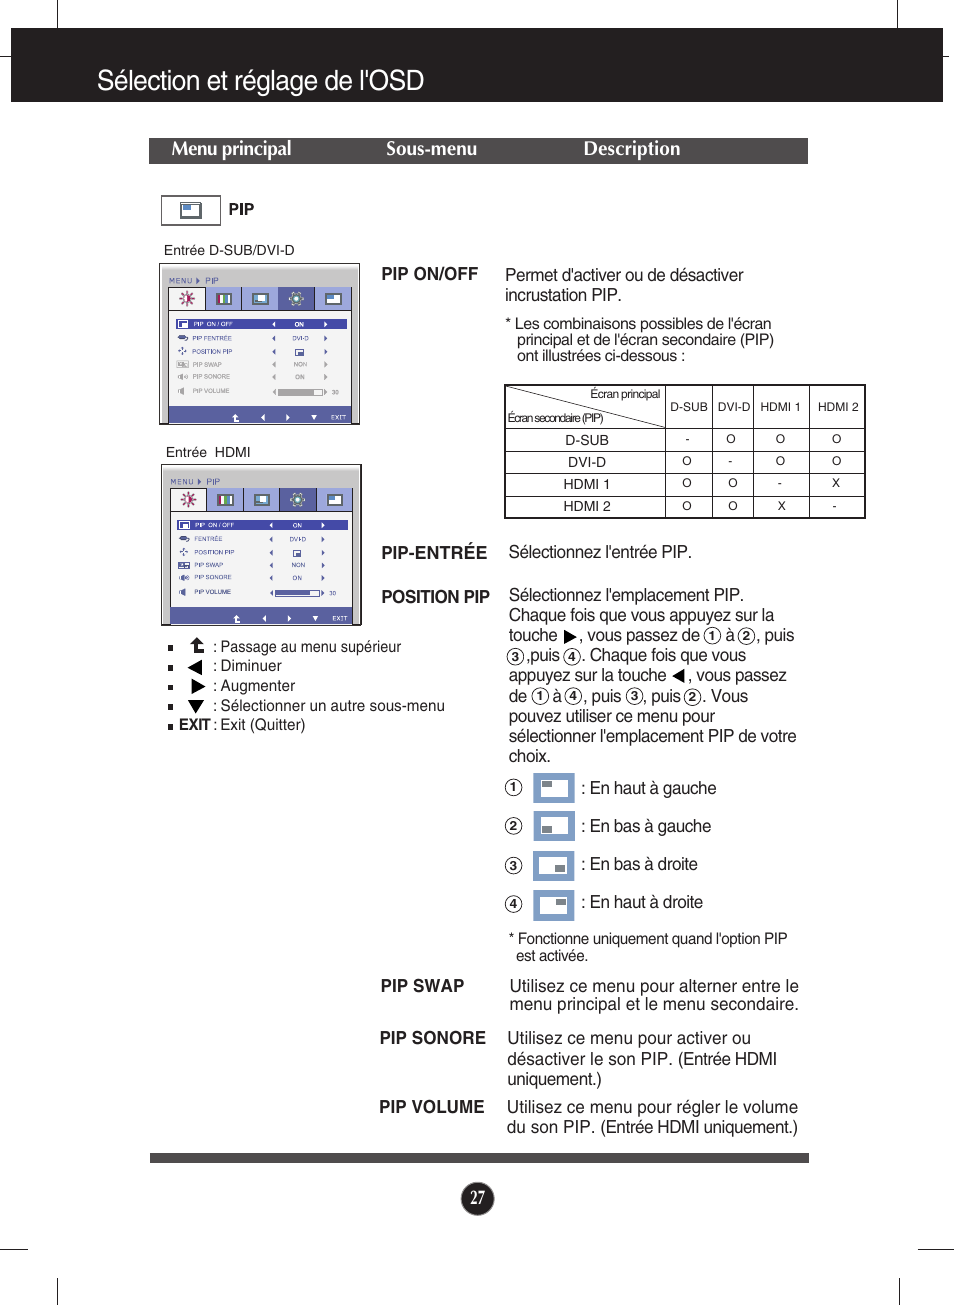 Sélection et réglage de l'osd, Menu principal sous-menu description | LG E2770V-BF Manuel d'utilisation | Page 28 / 38